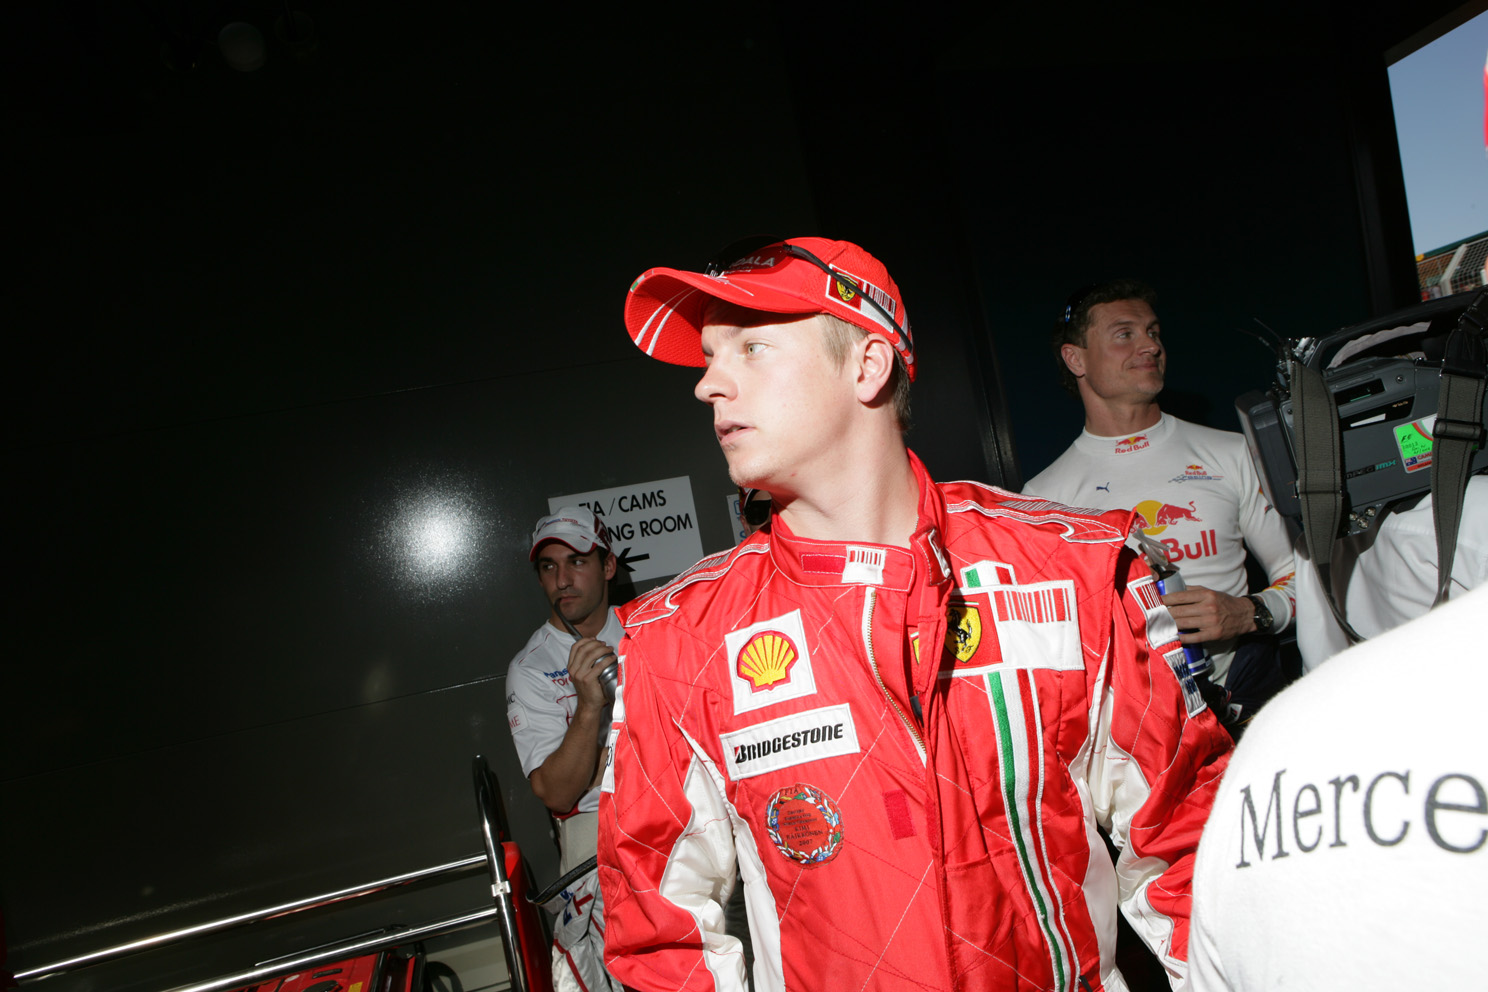 Kimi Räikkönen at the Australian Grand Prix 2008